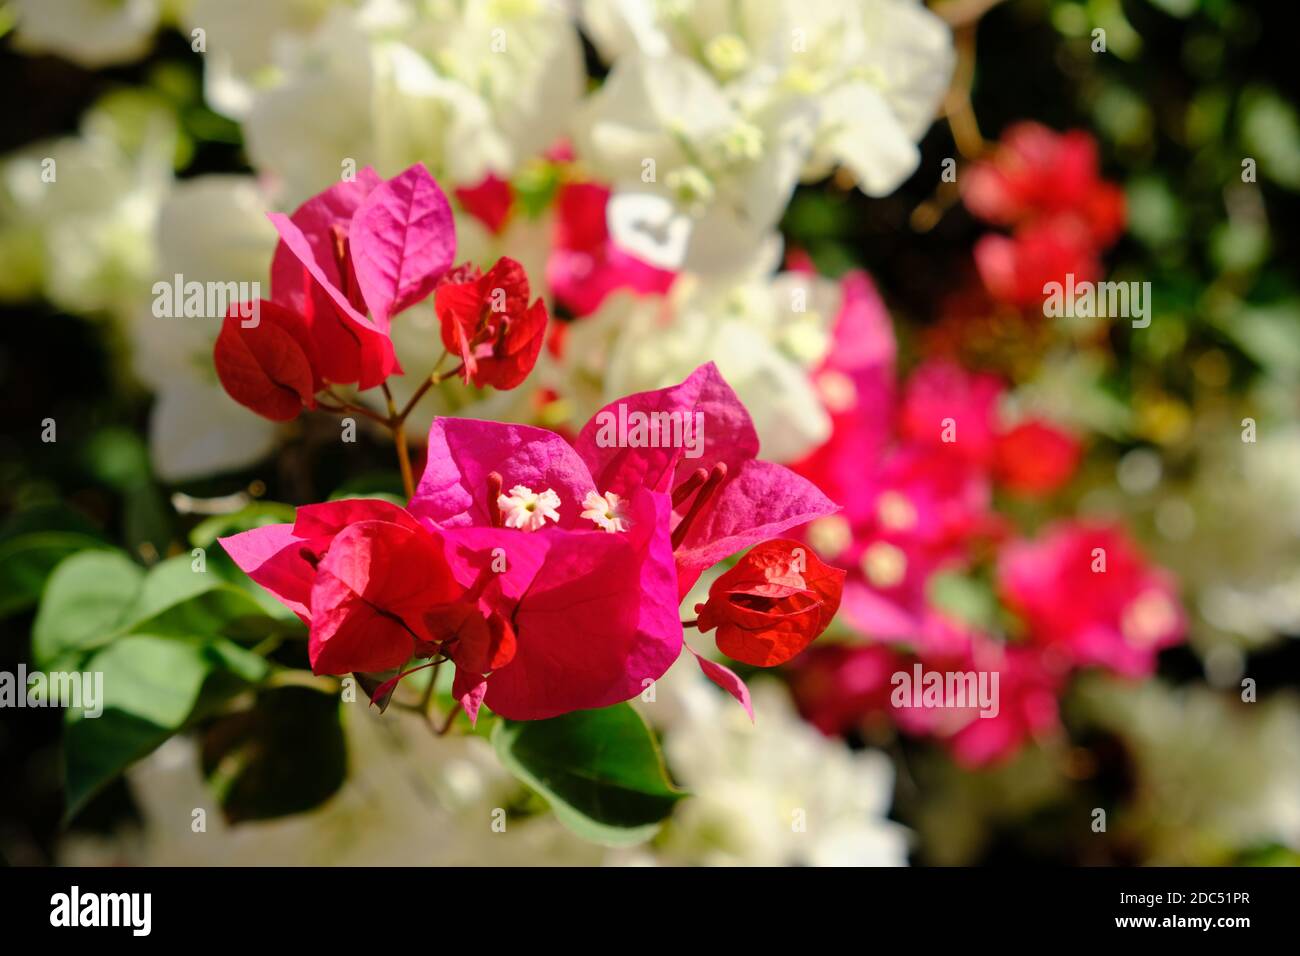 Marokko Marrakesch - Bunte und weiße rote Bougainvillea - Papier Blume Stockfoto